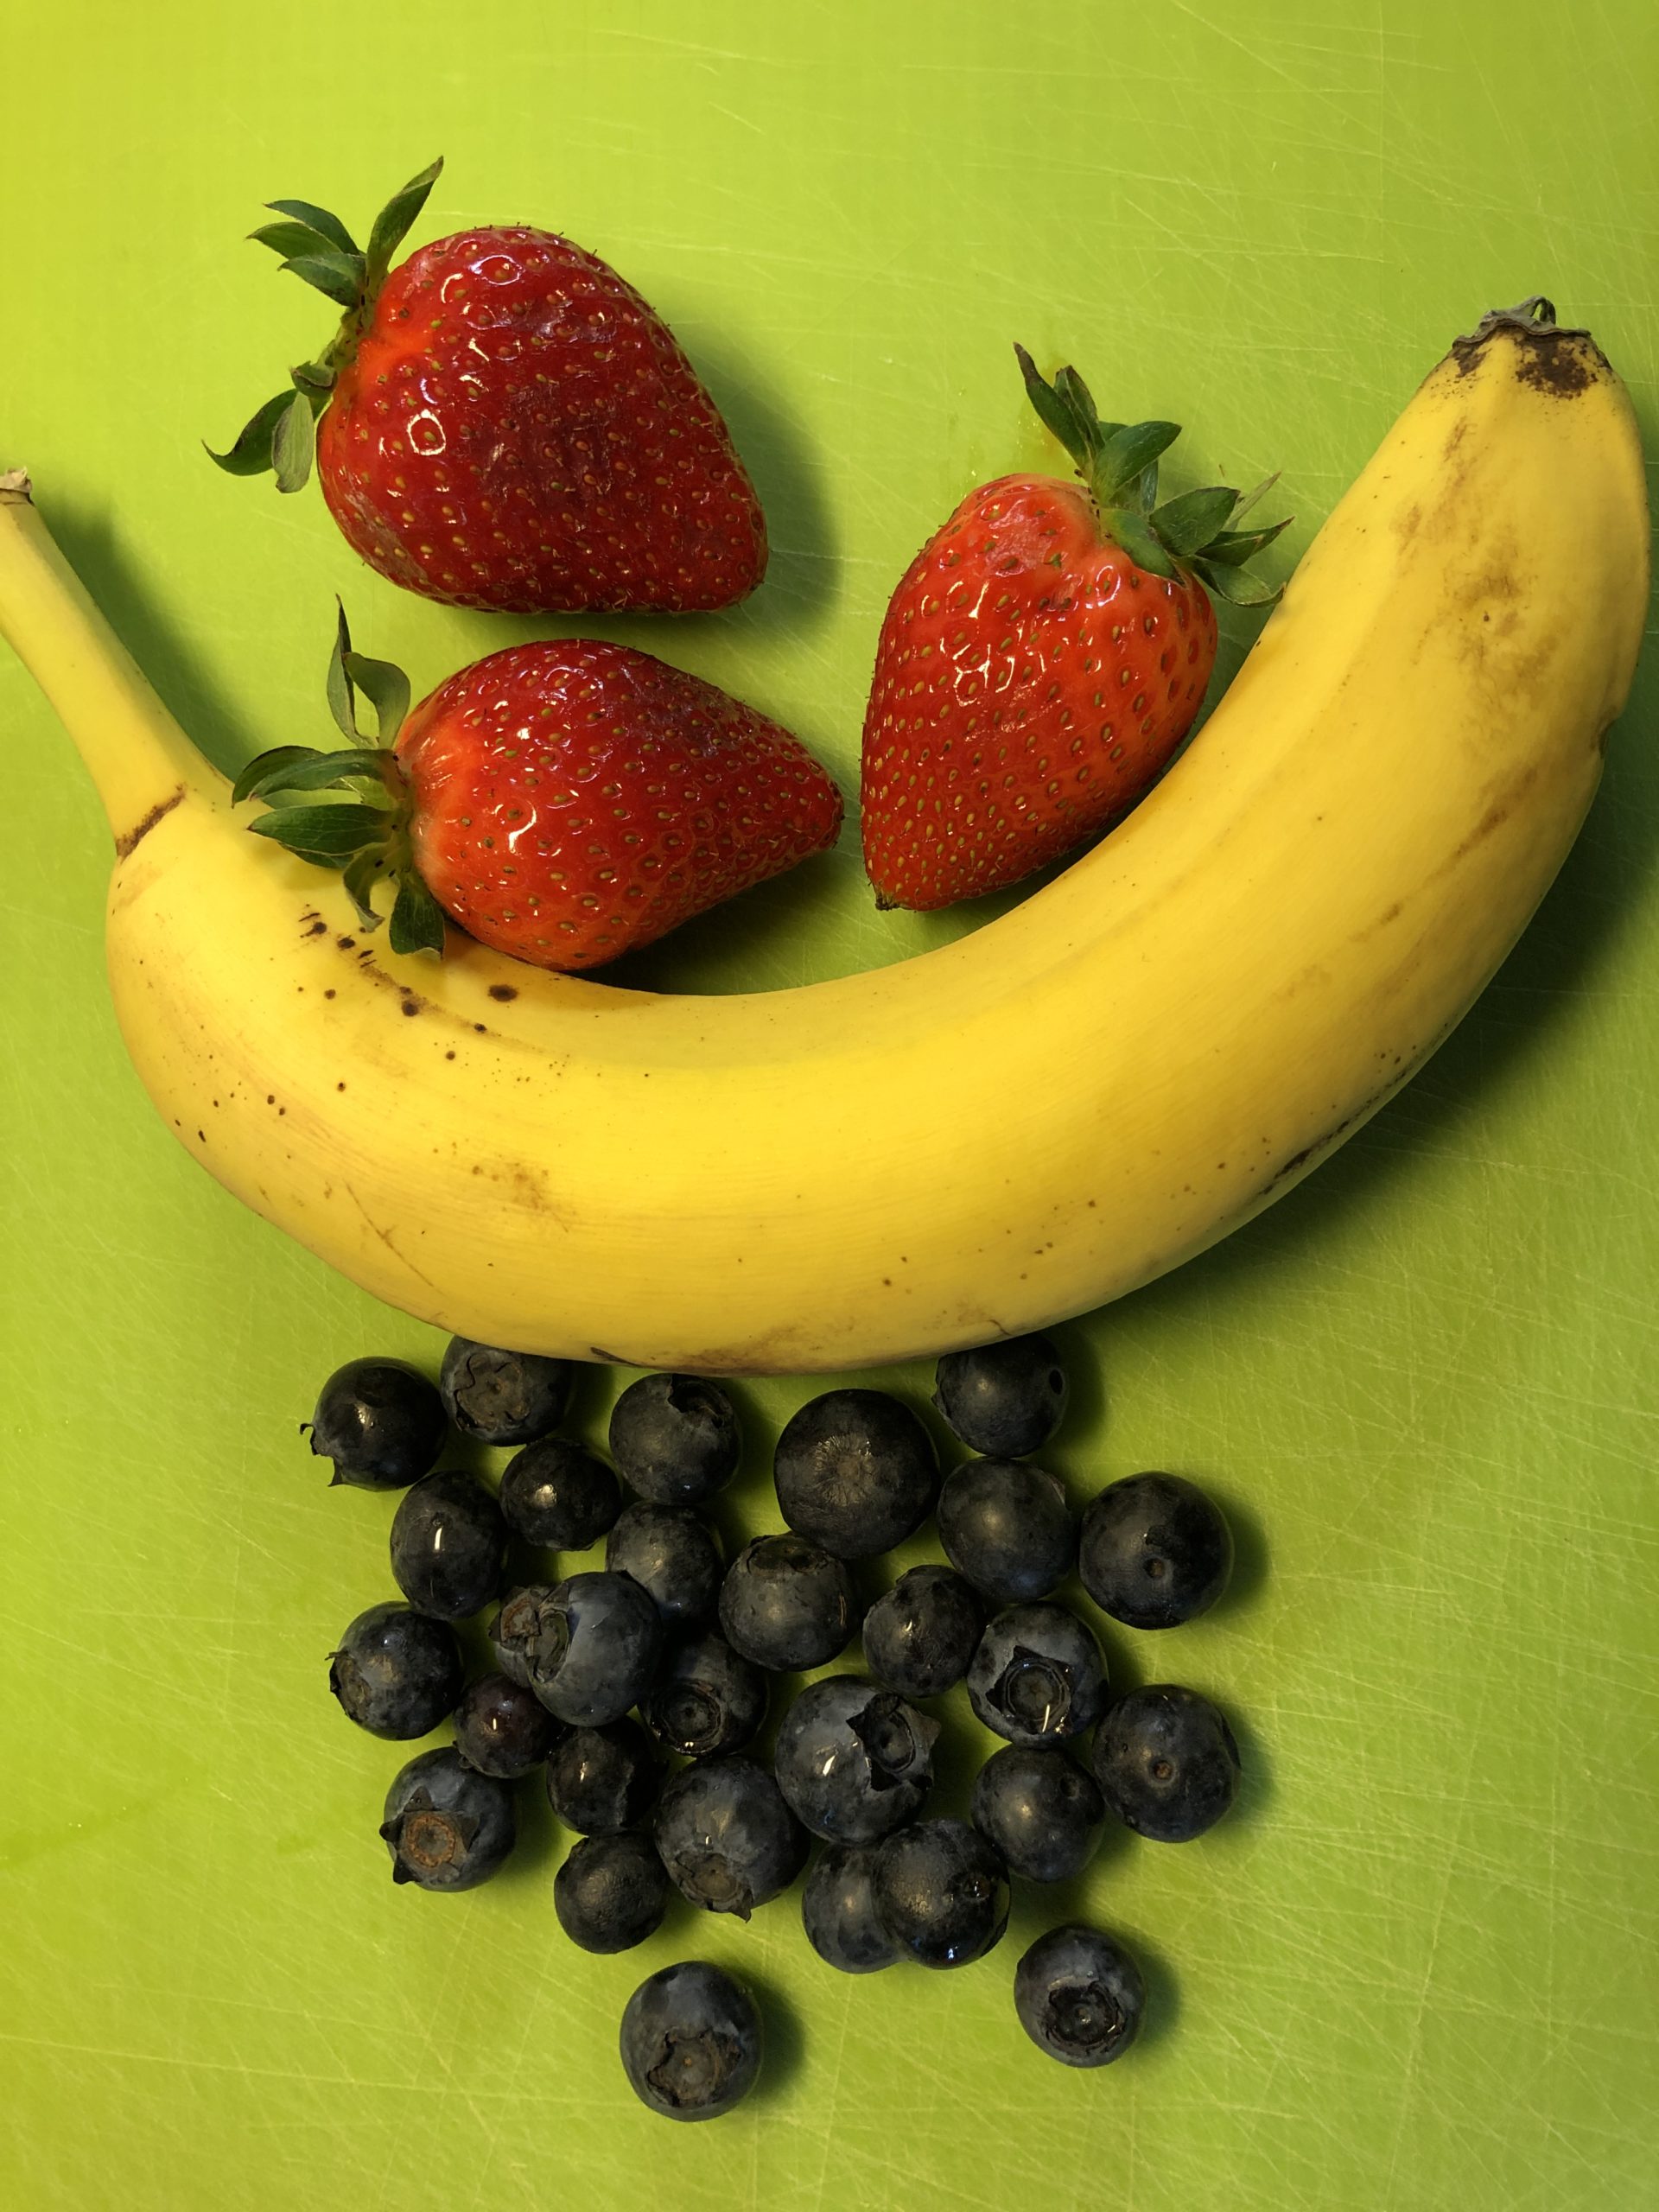 Bild zum Schritt 1 für die Kinder-Beschäftigung: 'Erdbeeren und Heidelbeeren waschen, Stile und Blätter entfernen. Banane schälen.'